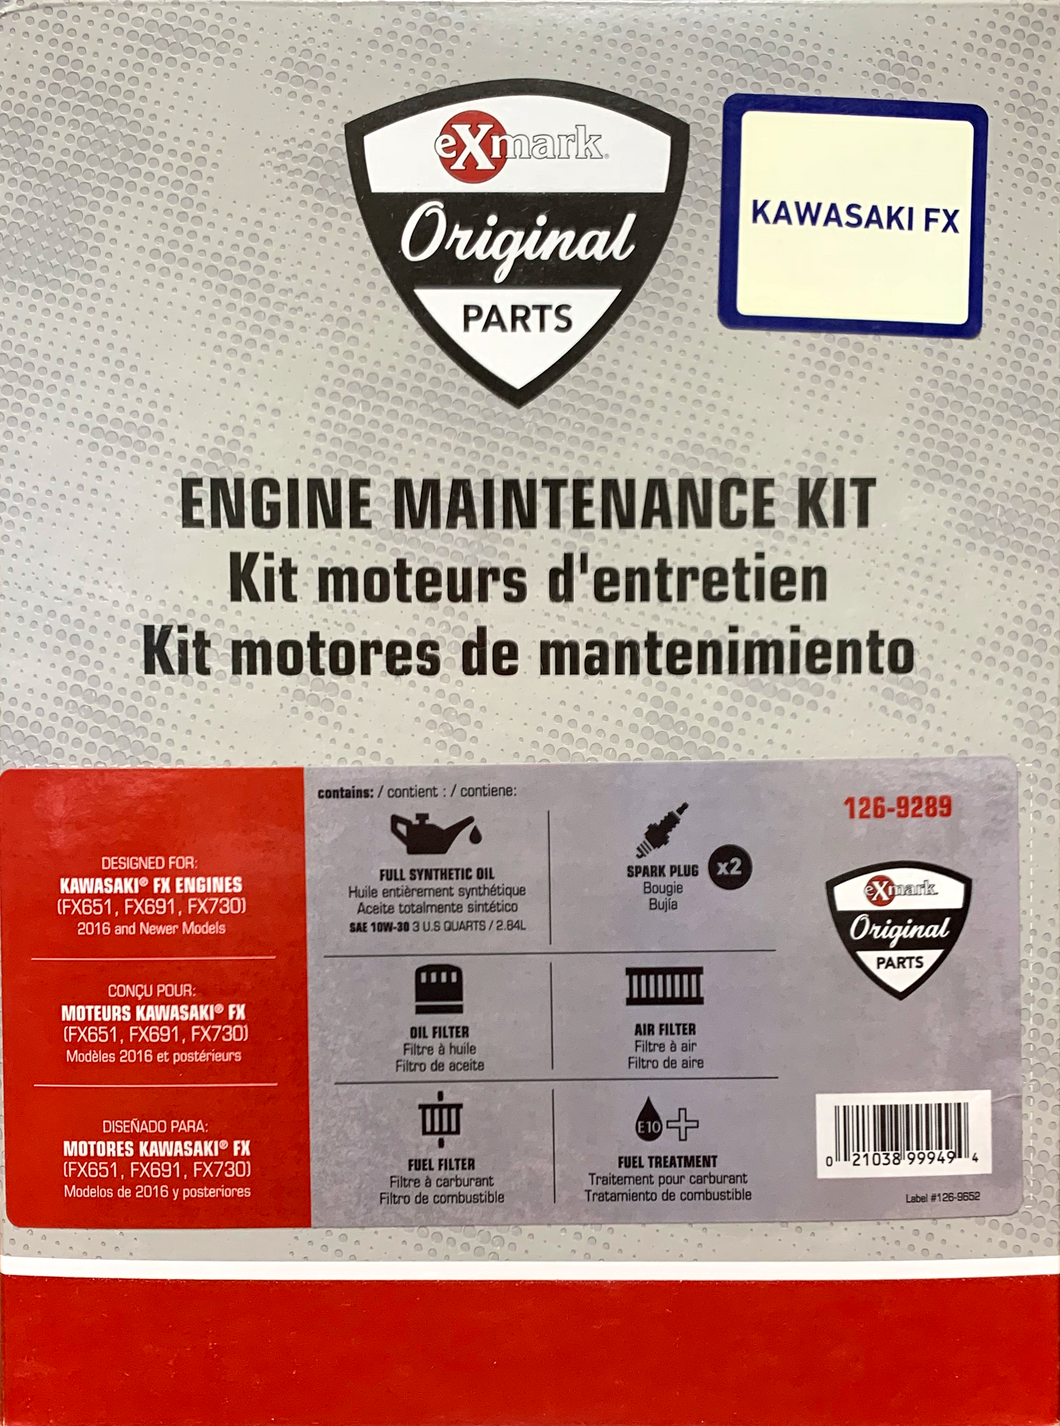 Exmark Engine Maintenance Kit - Kawasaki FX (126-9289)